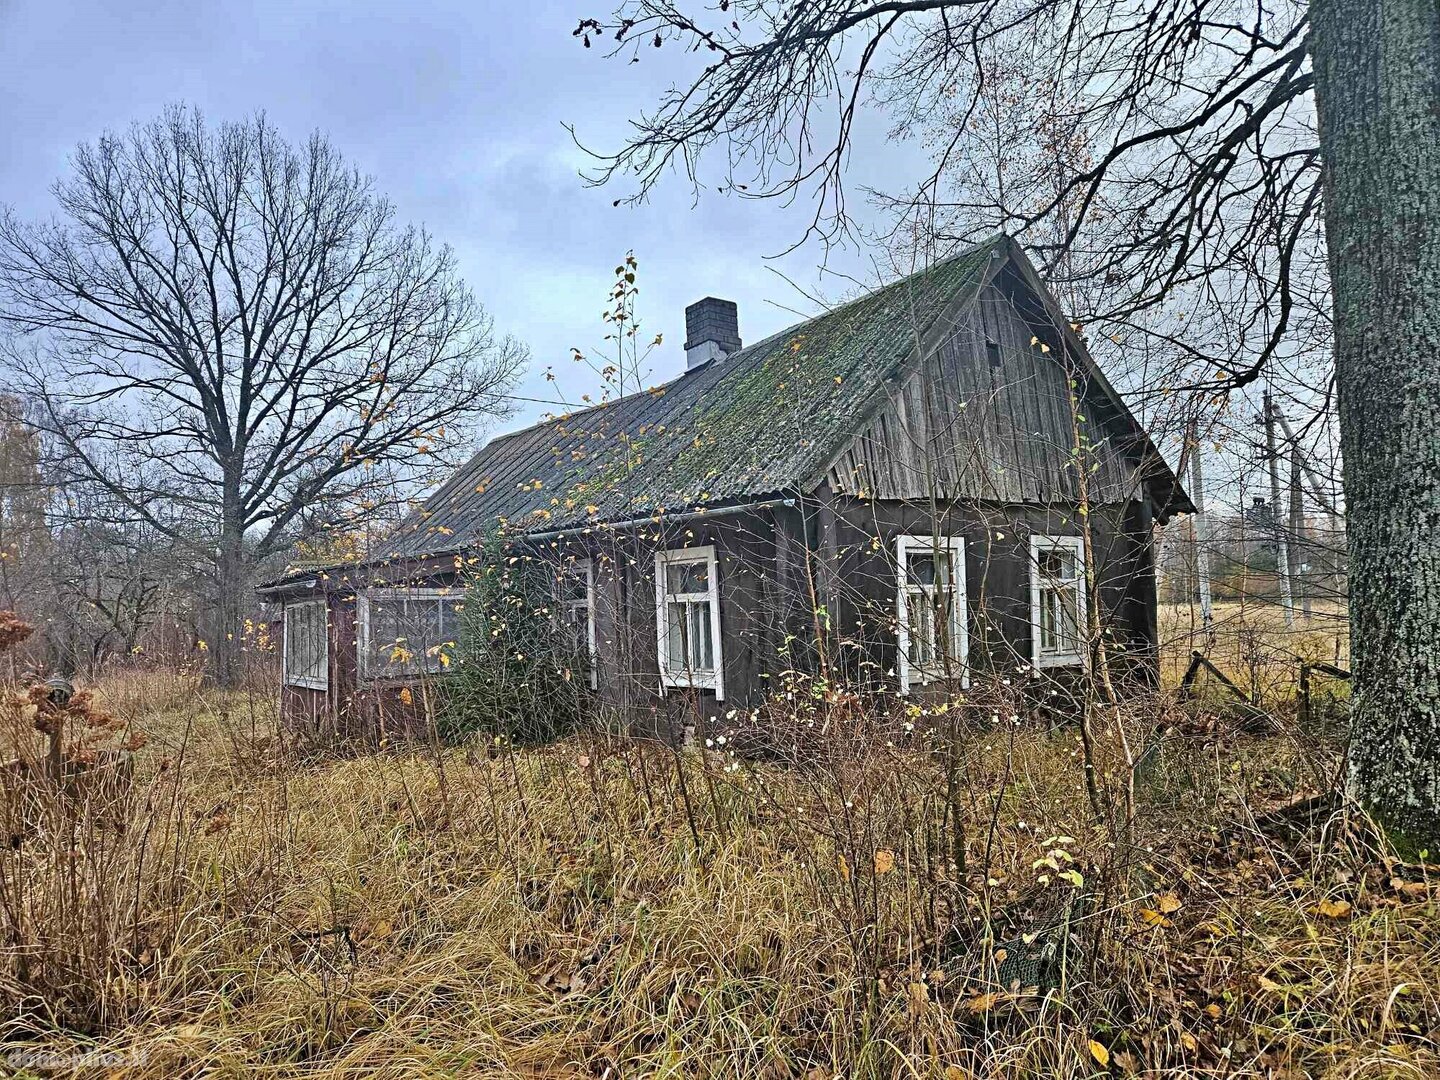 Land for sale Rokiškio rajono sav., Rokiškyje, Panevėžio g.